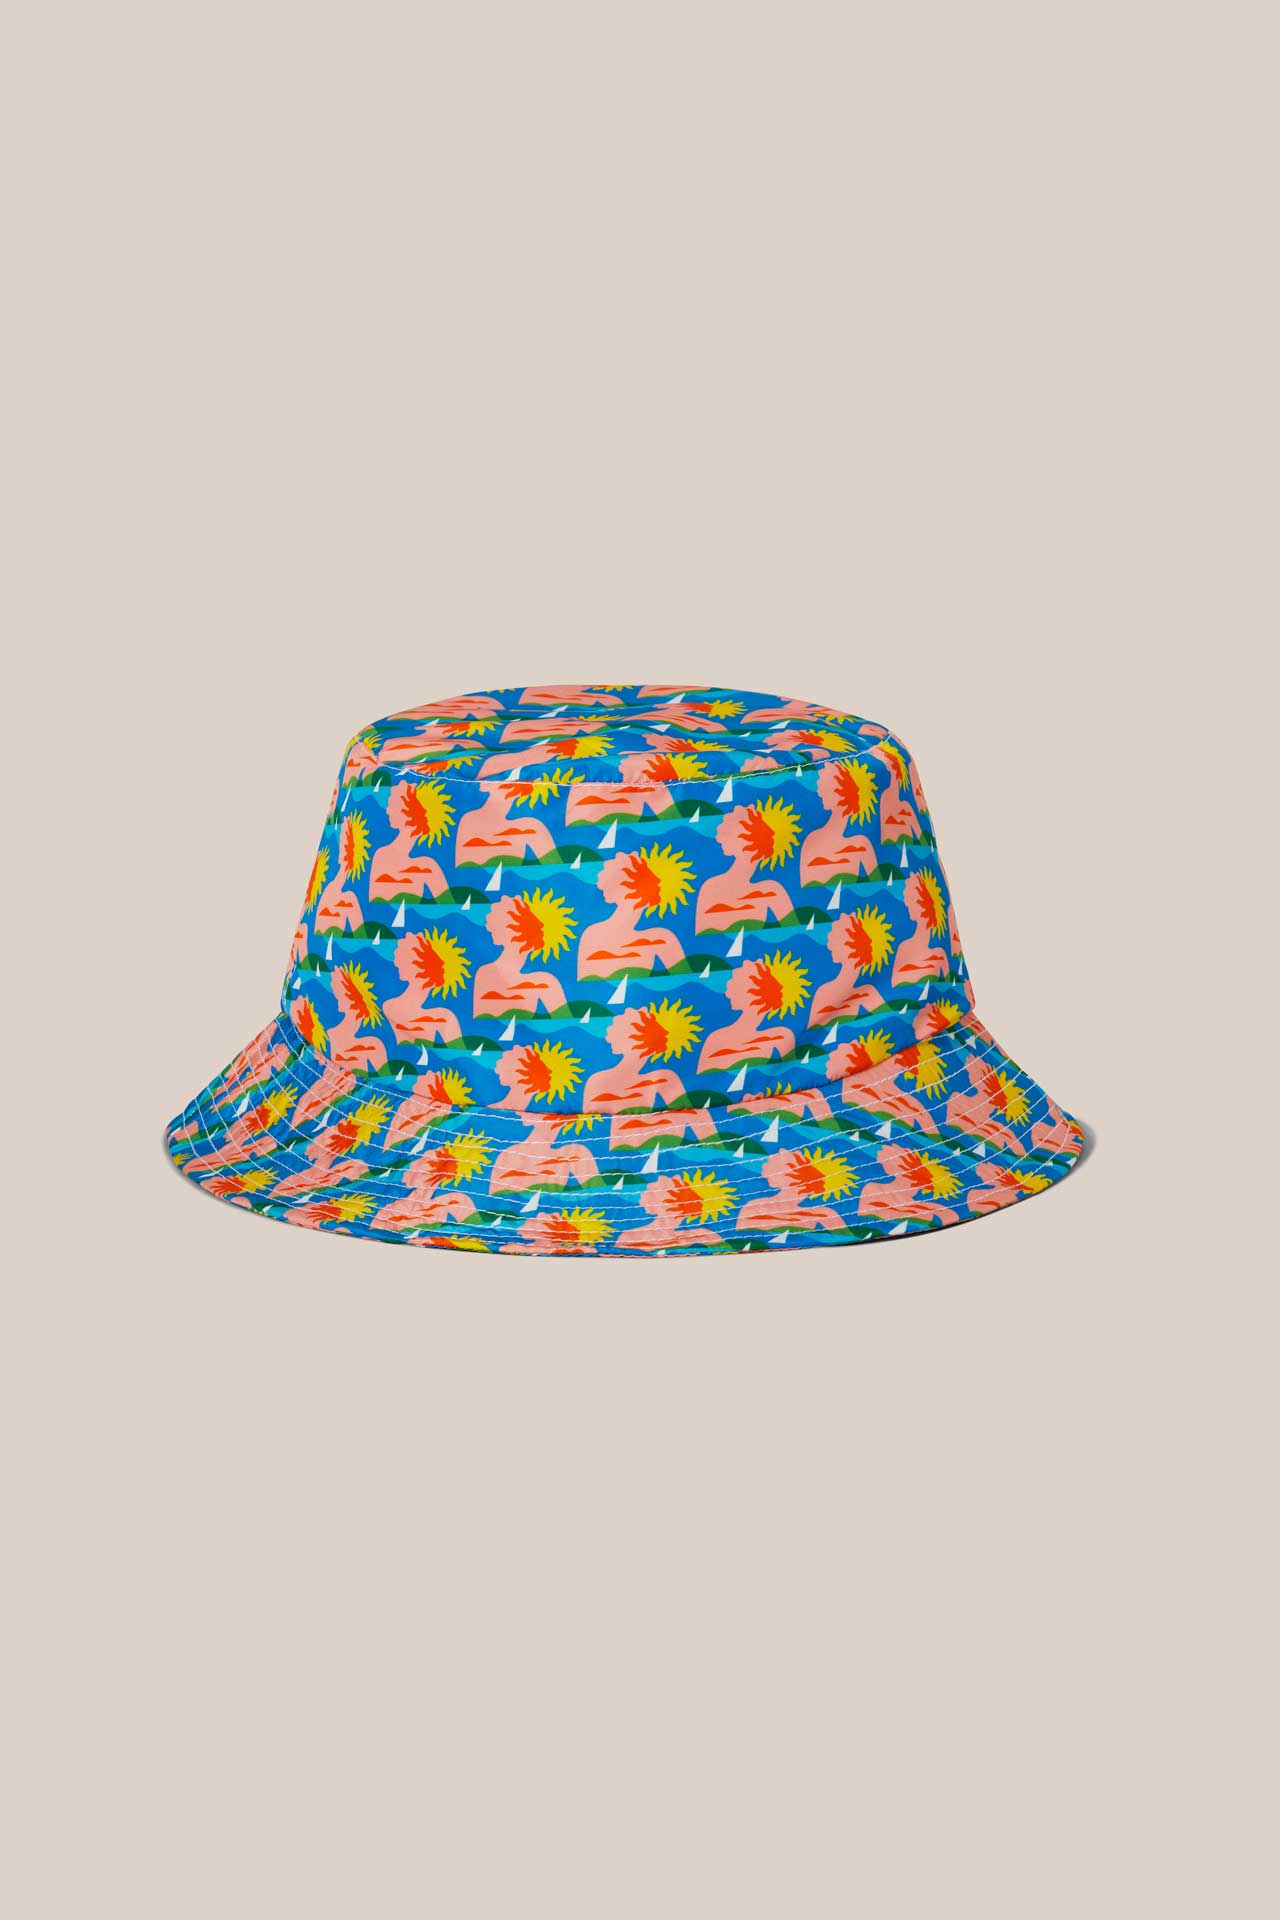 Bucket Hat Blue Sunbathing -  bucket-hat-blue-sunbathing-x-rob-wilson -Arrels Barcelona